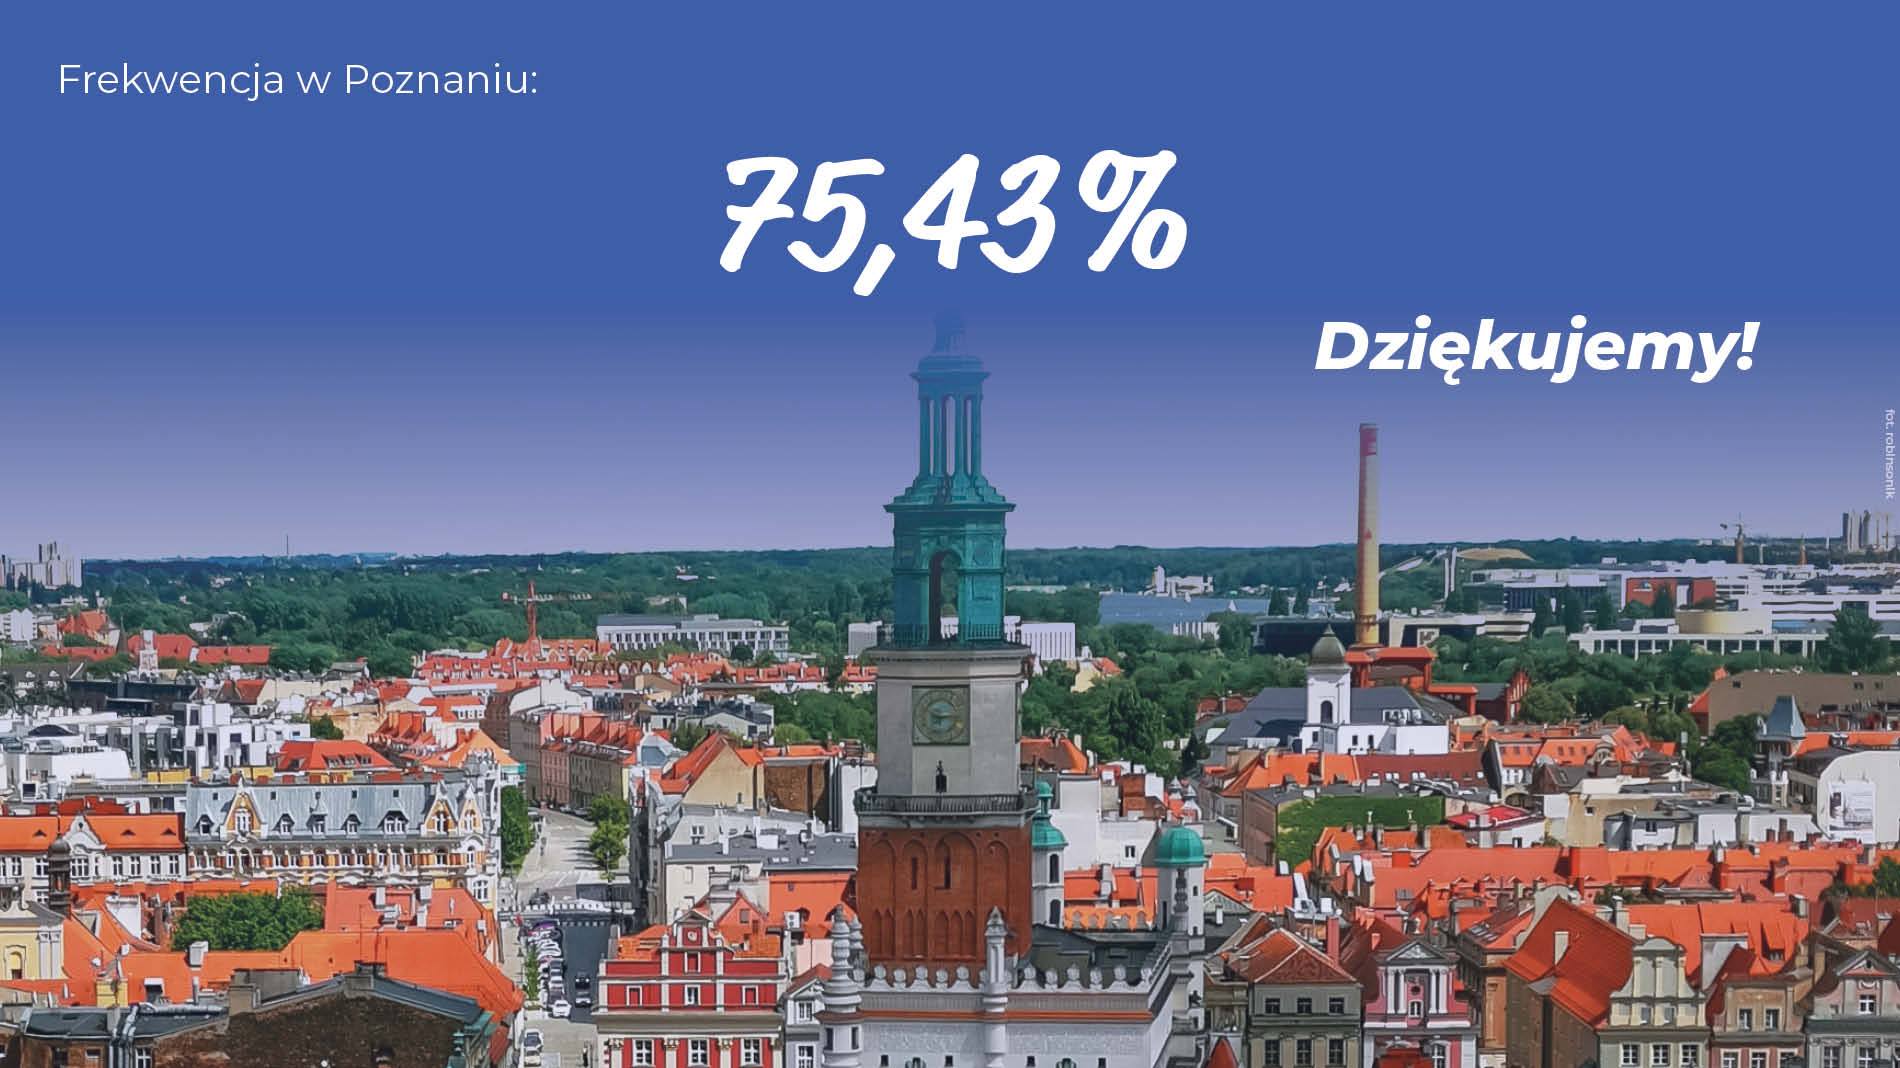 Rekordowa frekwencja w Poznaniu - grafika artykułu